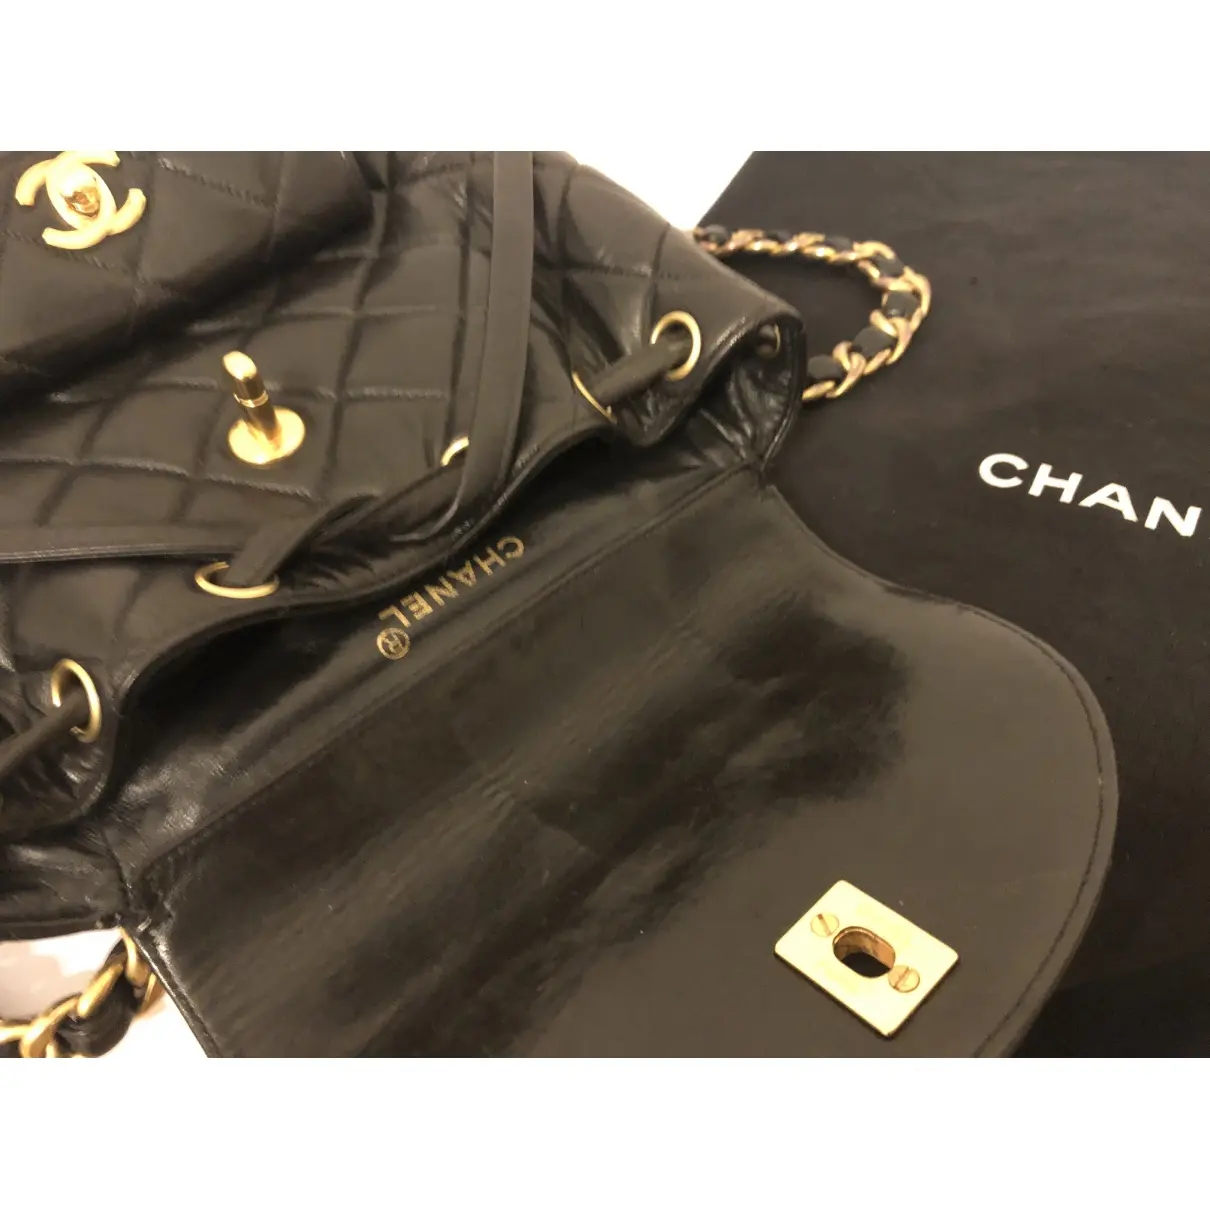 Duma leather backpack Chanel